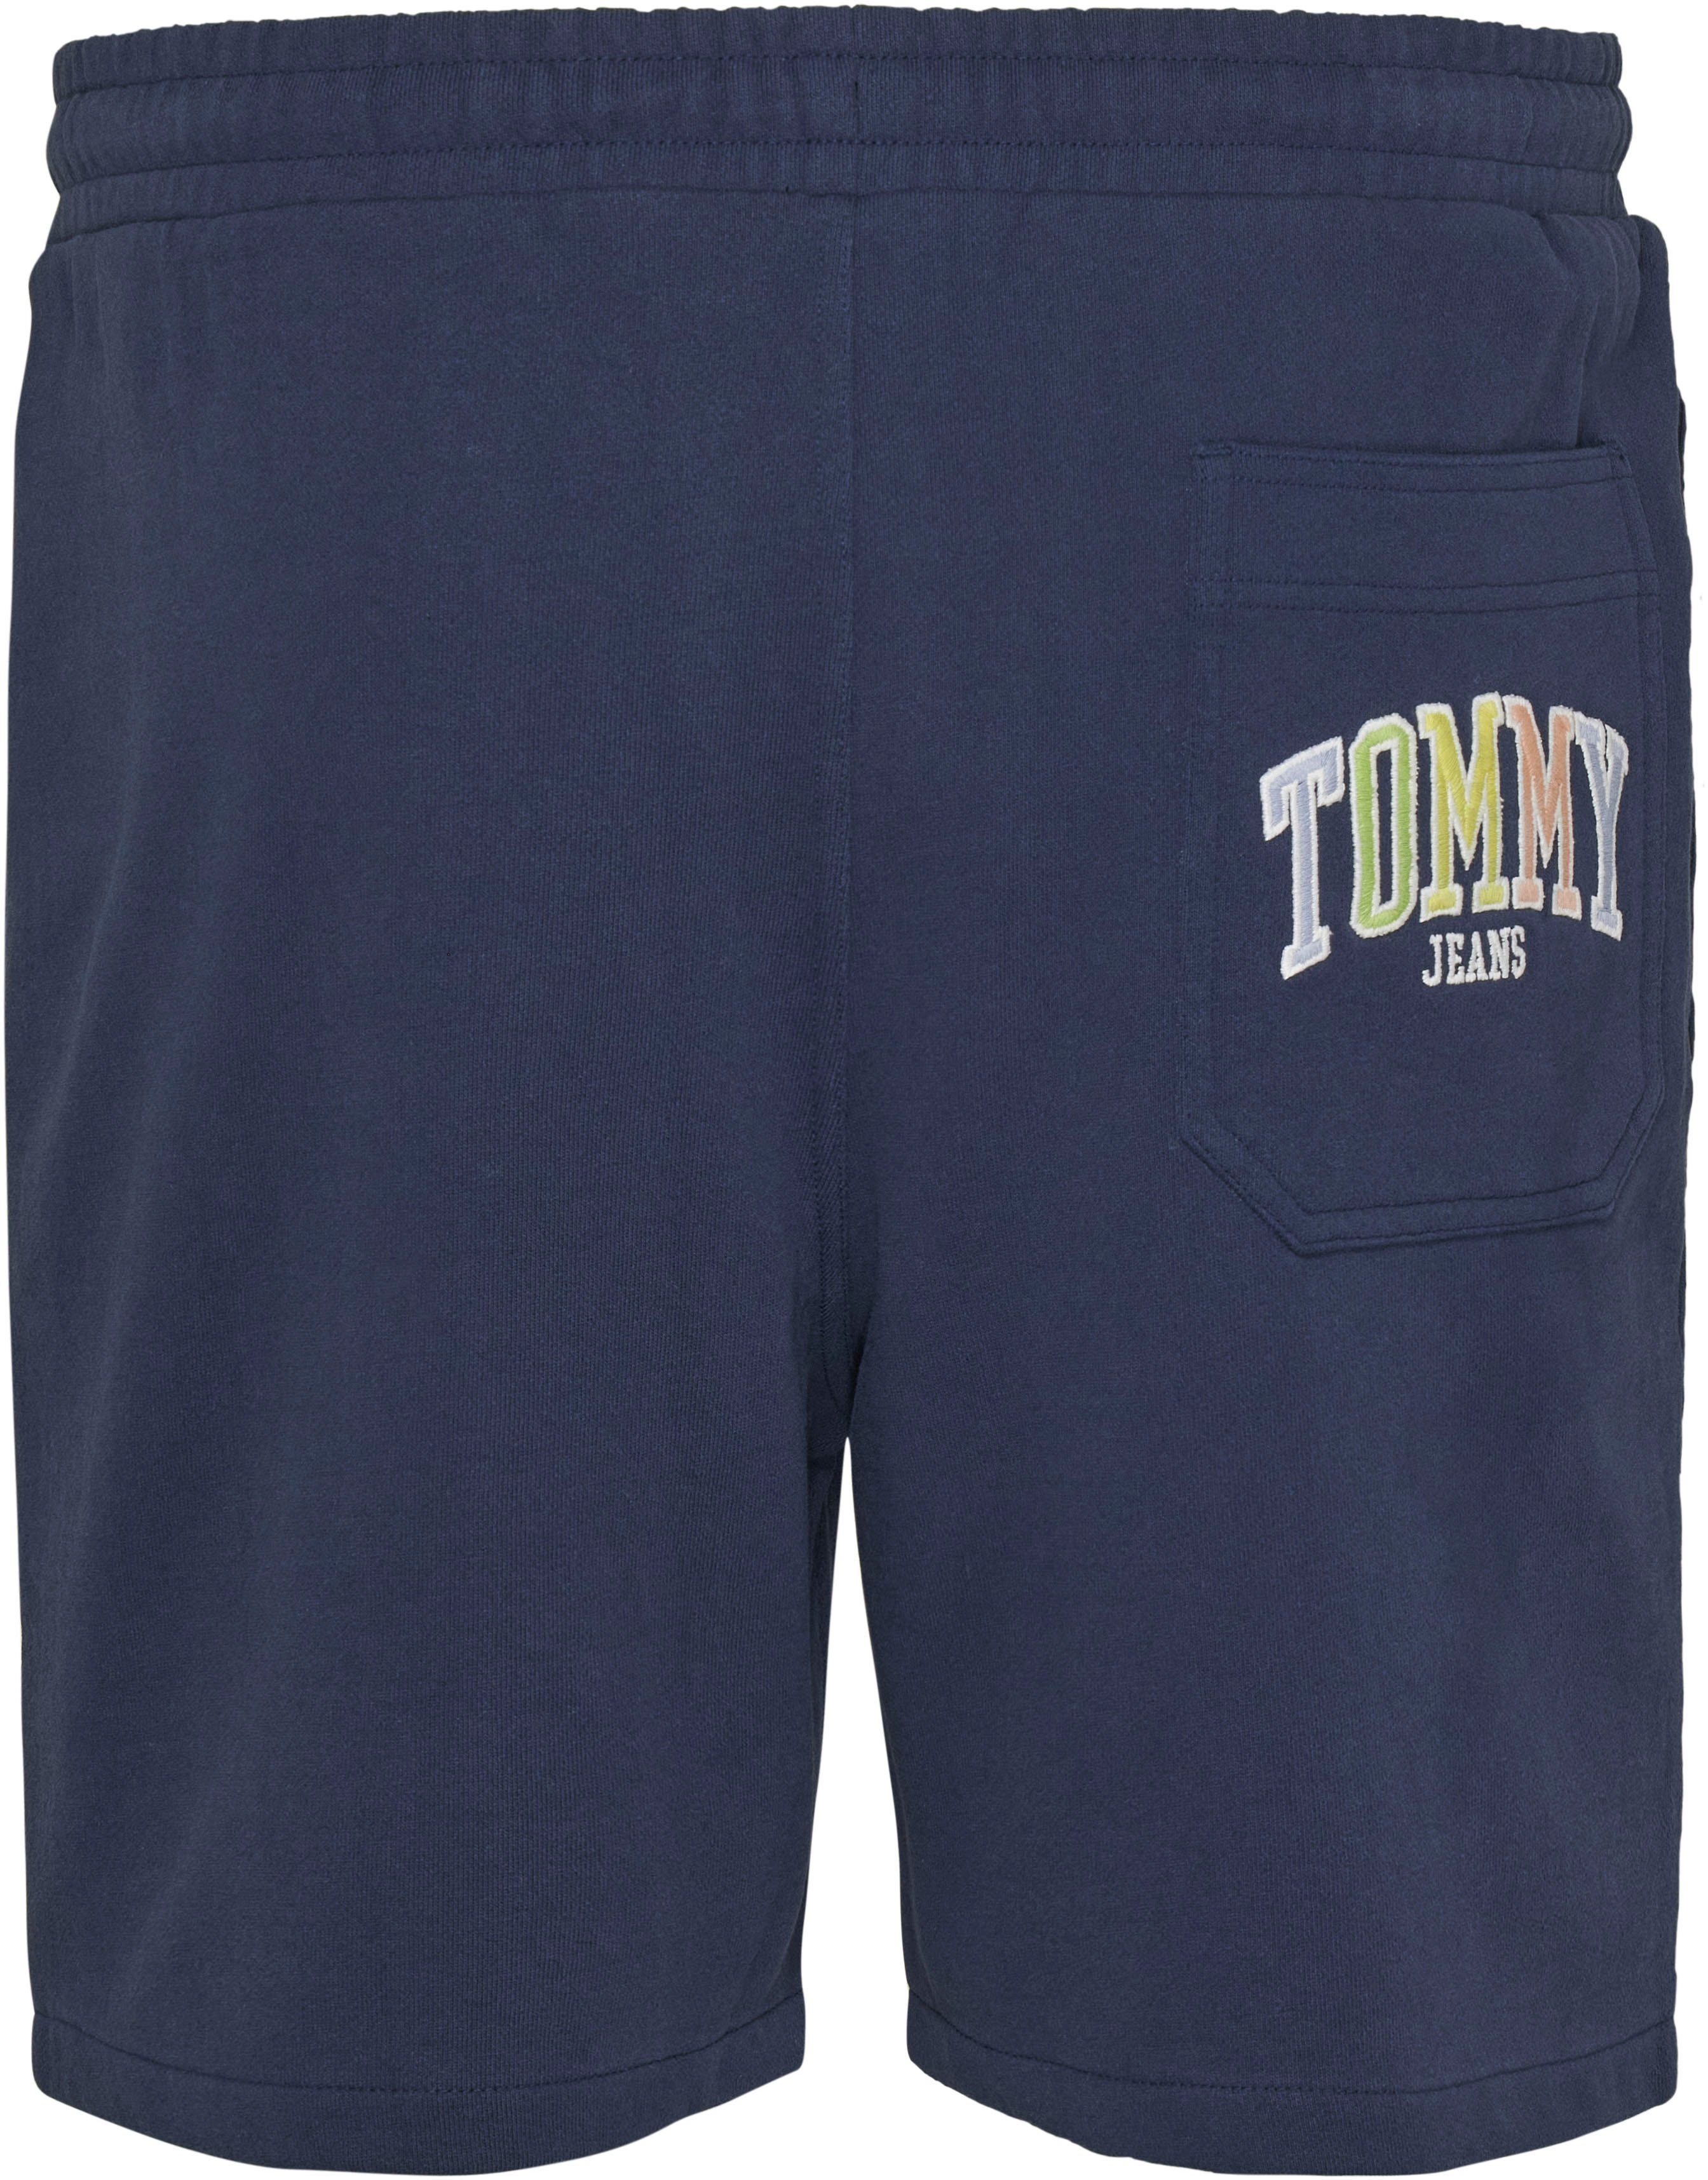 POP COLLEGE Jeans Shorts mit SURFER Tommy SHORT TJM Stickereien